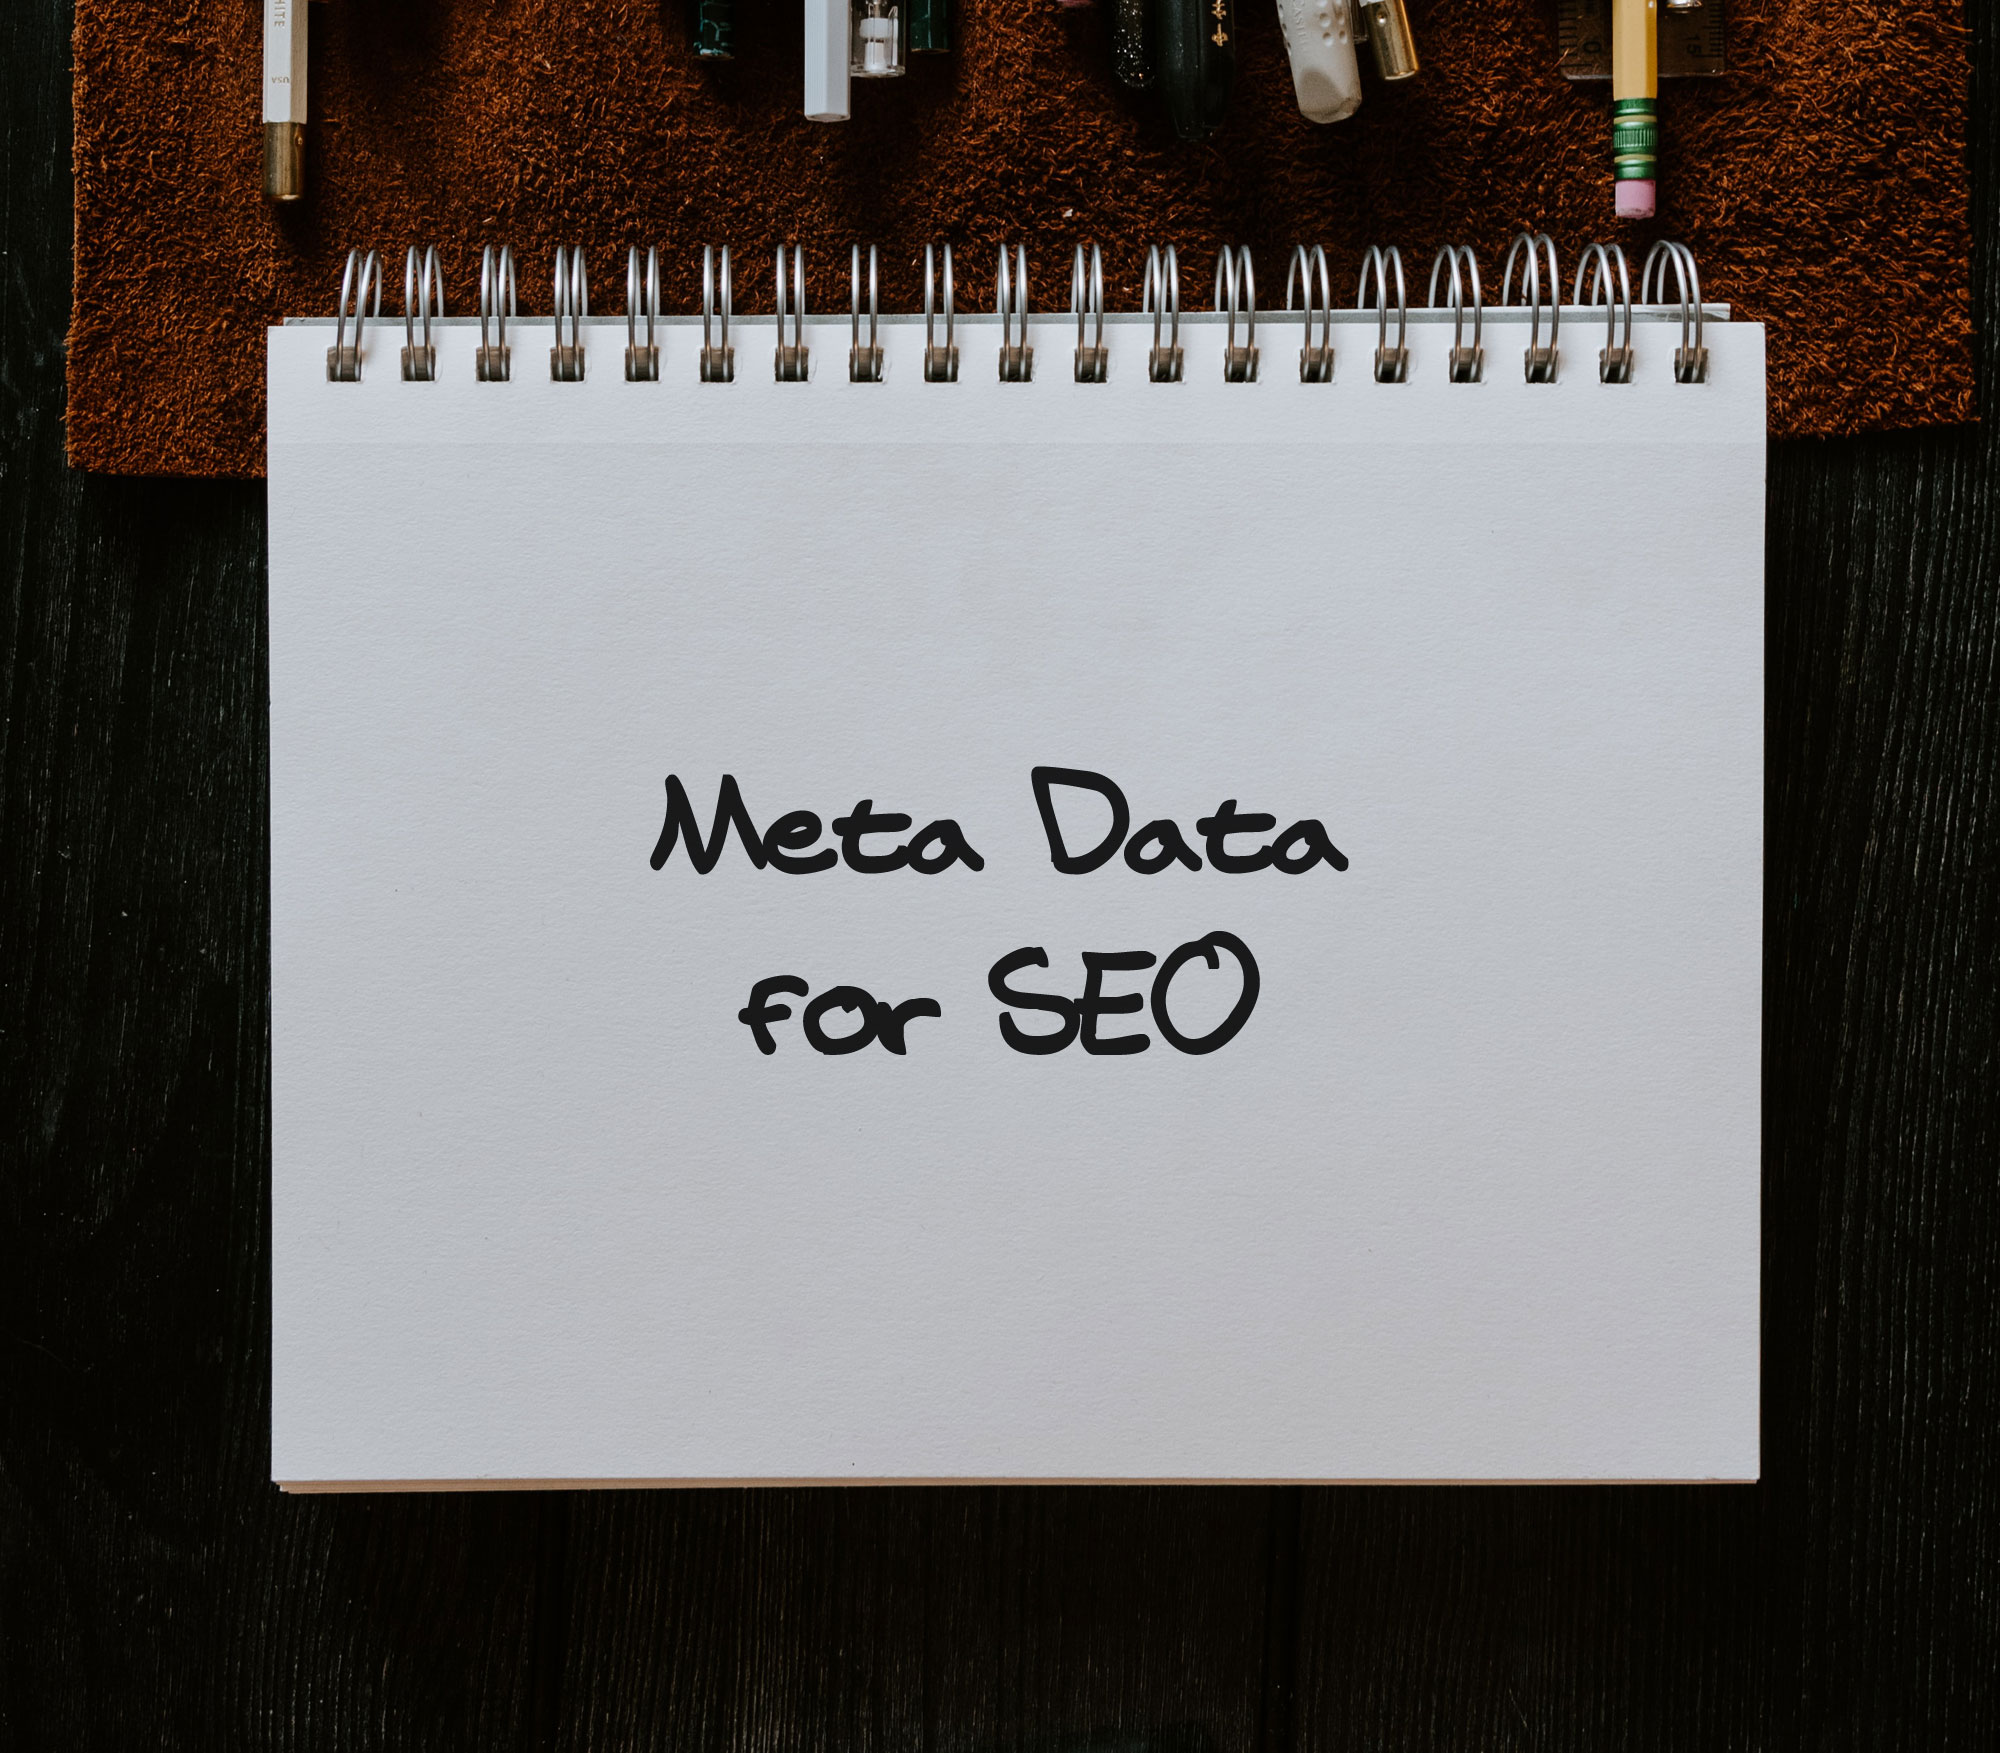 Meta Data for SEO